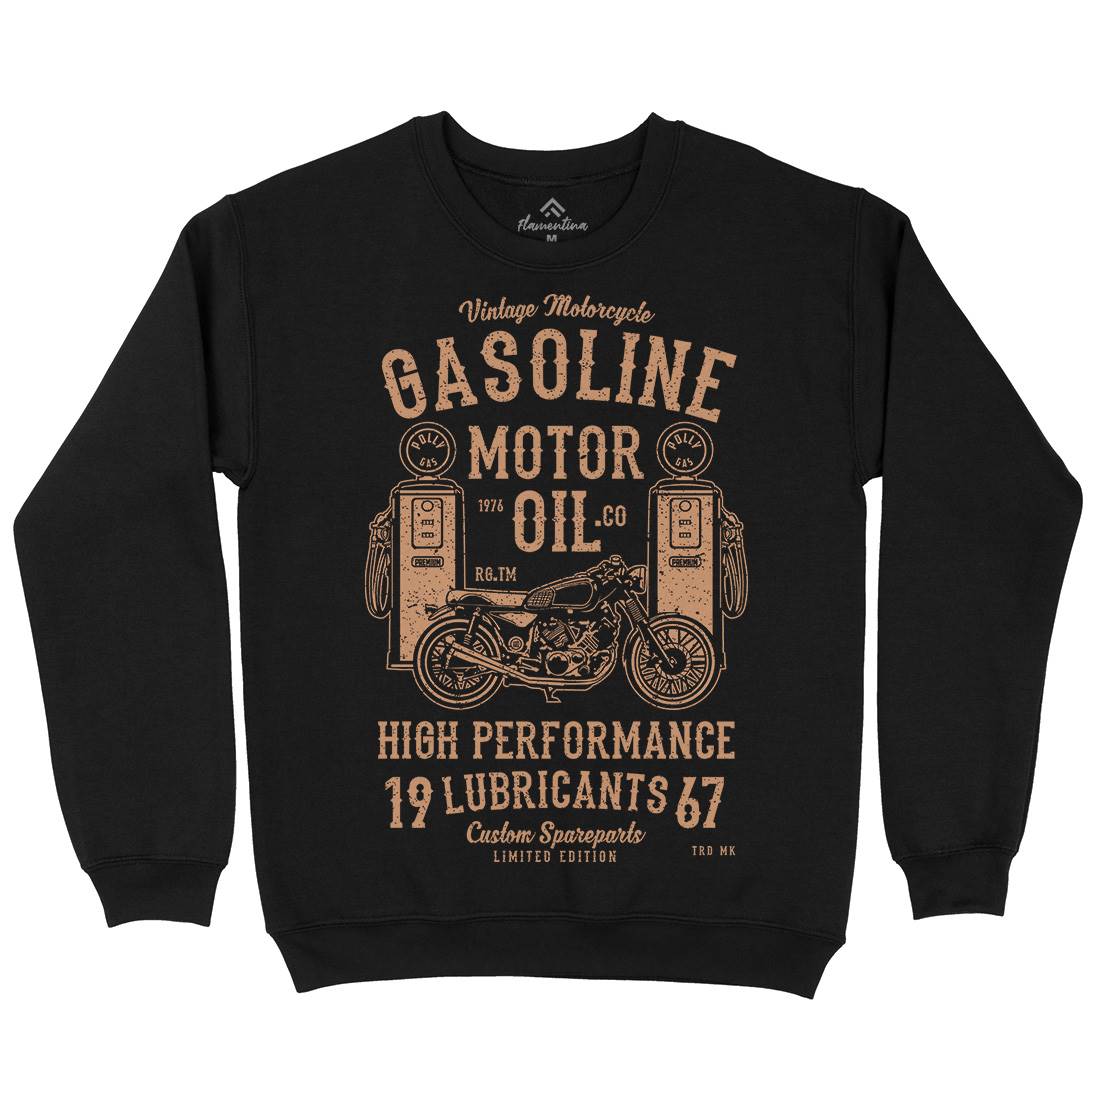 Gasoline Motor Oil Kids Crew Neck Sweatshirt Motorcycles A669